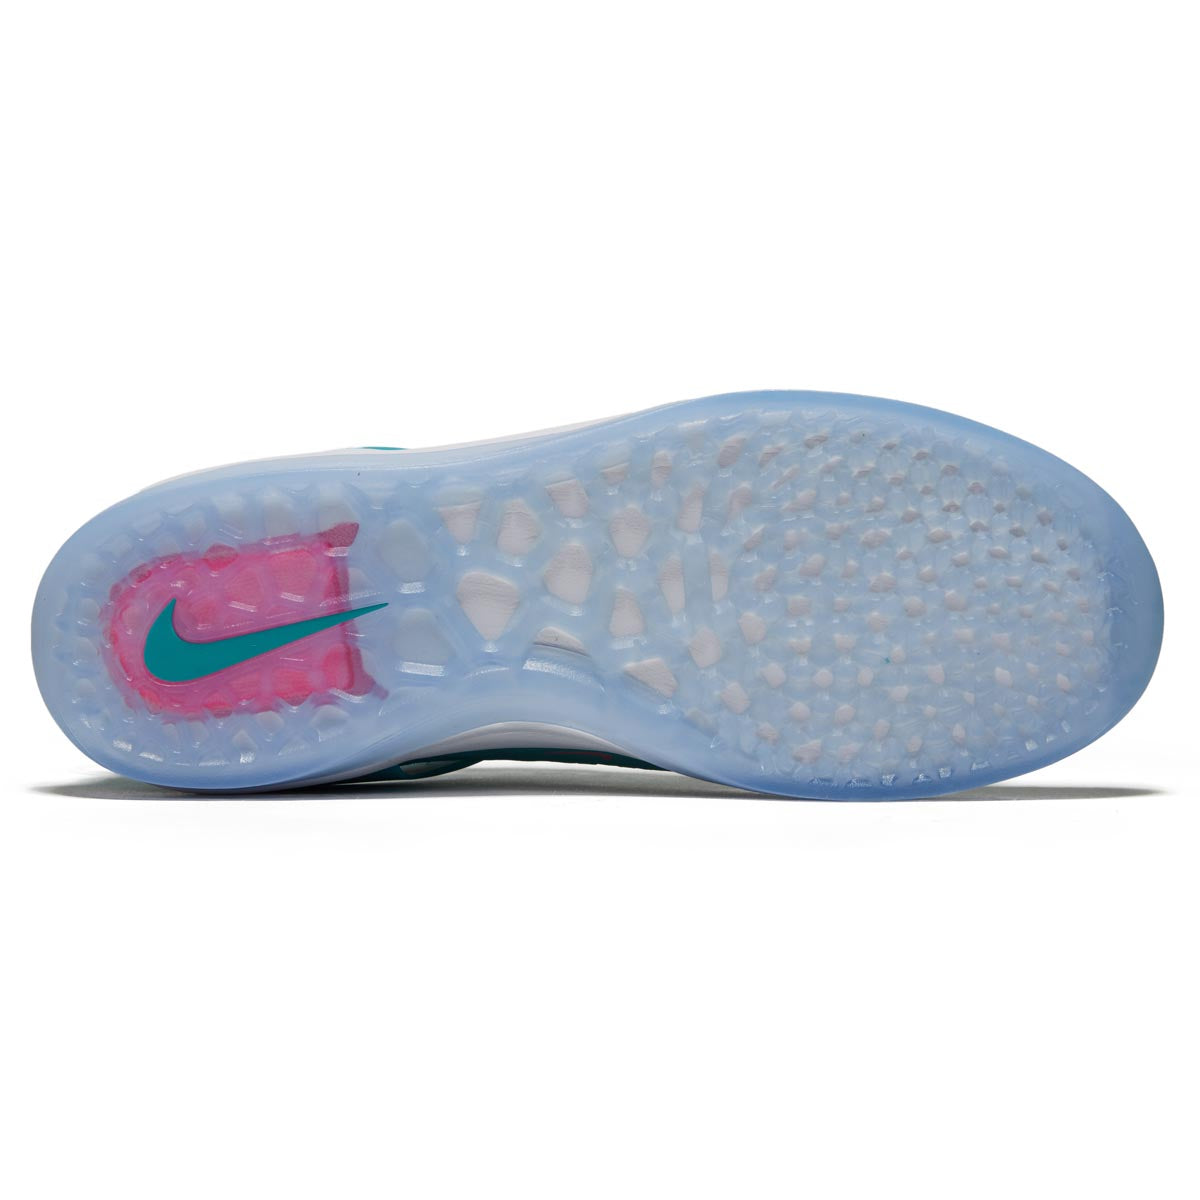 Nike SB Zoom Nyjah 3 Shoes - Dusty Cactus/Pinksicle/Dusty Cactus image 4